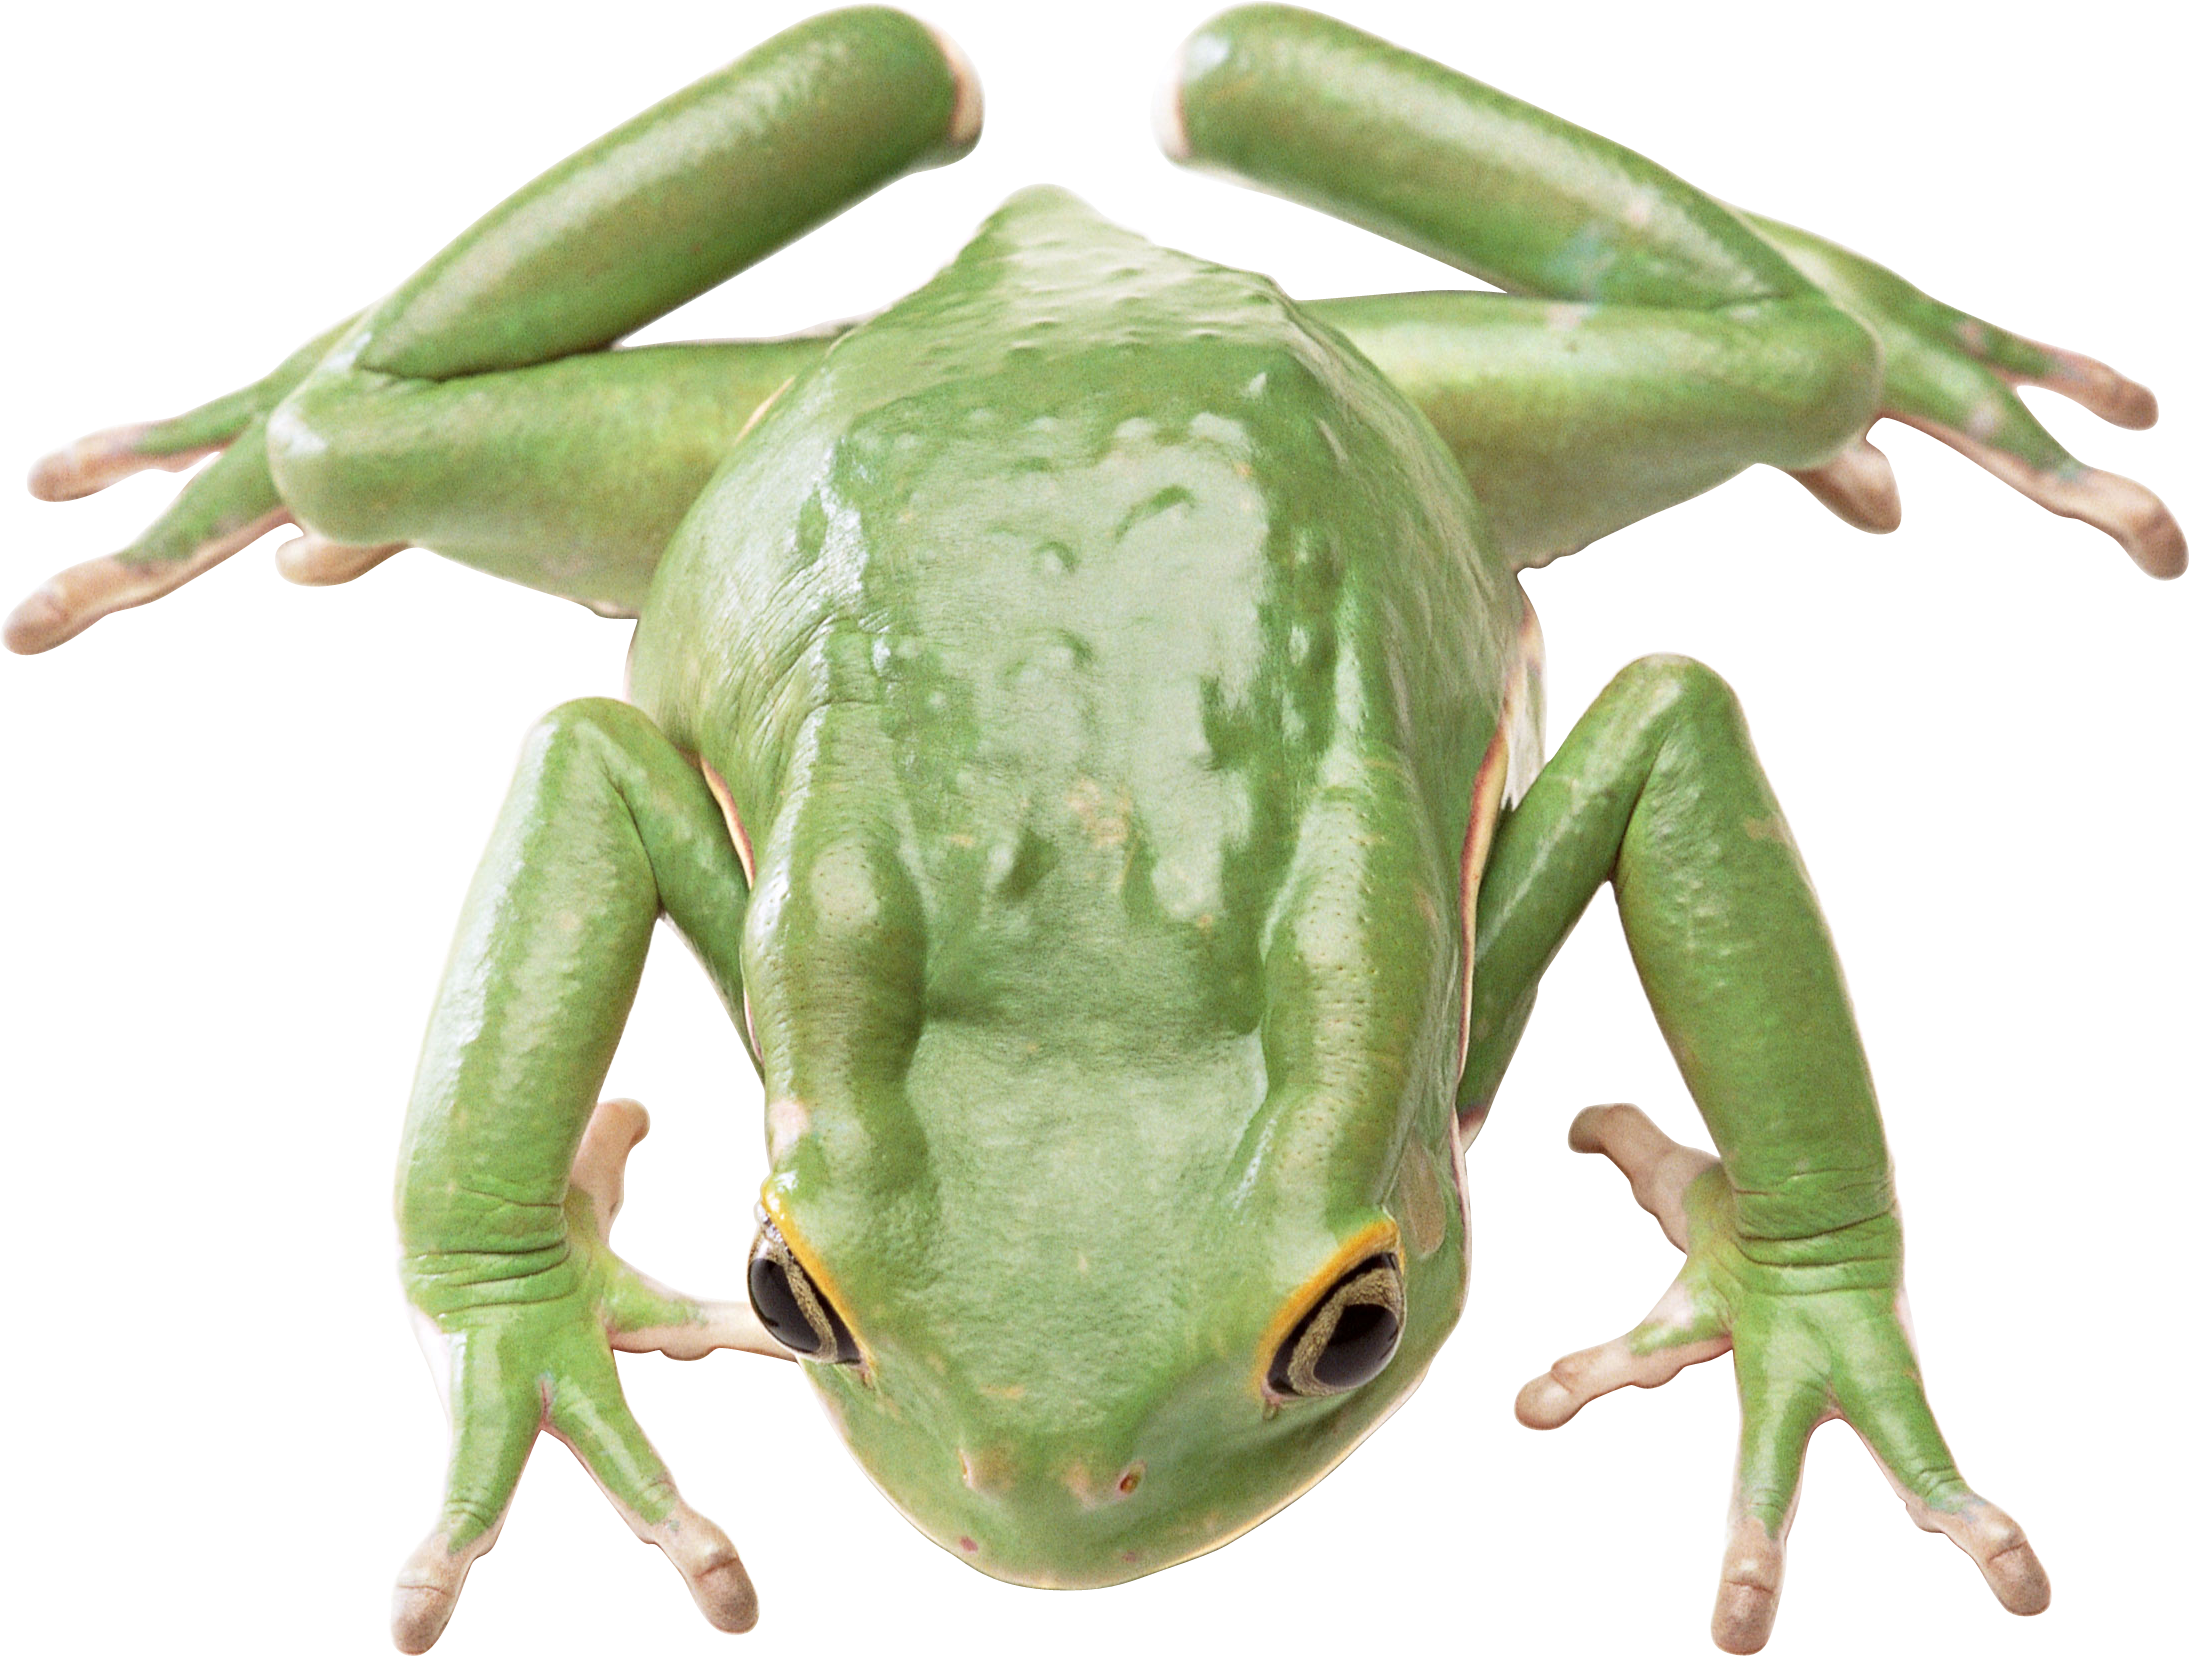 Yeşil kurbağa